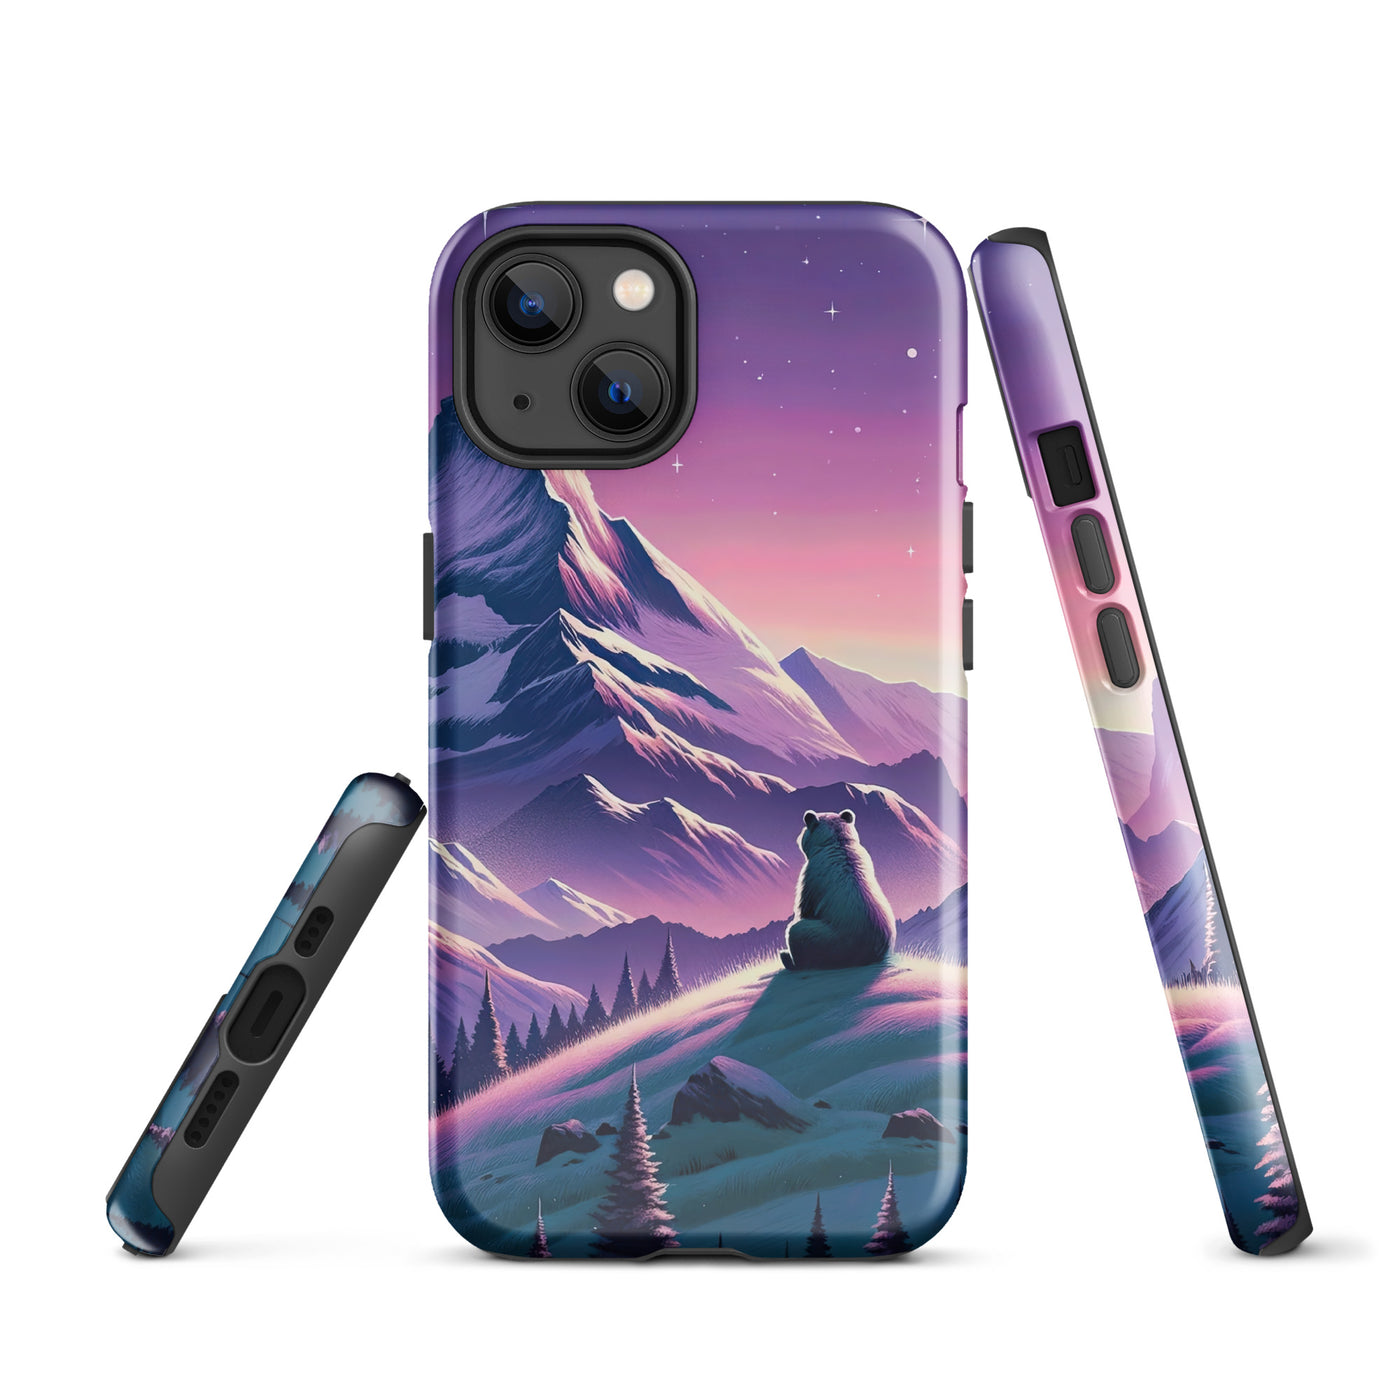 Bezaubernder Alpenabend mit Bär, lavendel-rosafarbener Himmel (AN) - iPhone Schutzhülle (robust) xxx yyy zzz iPhone 13